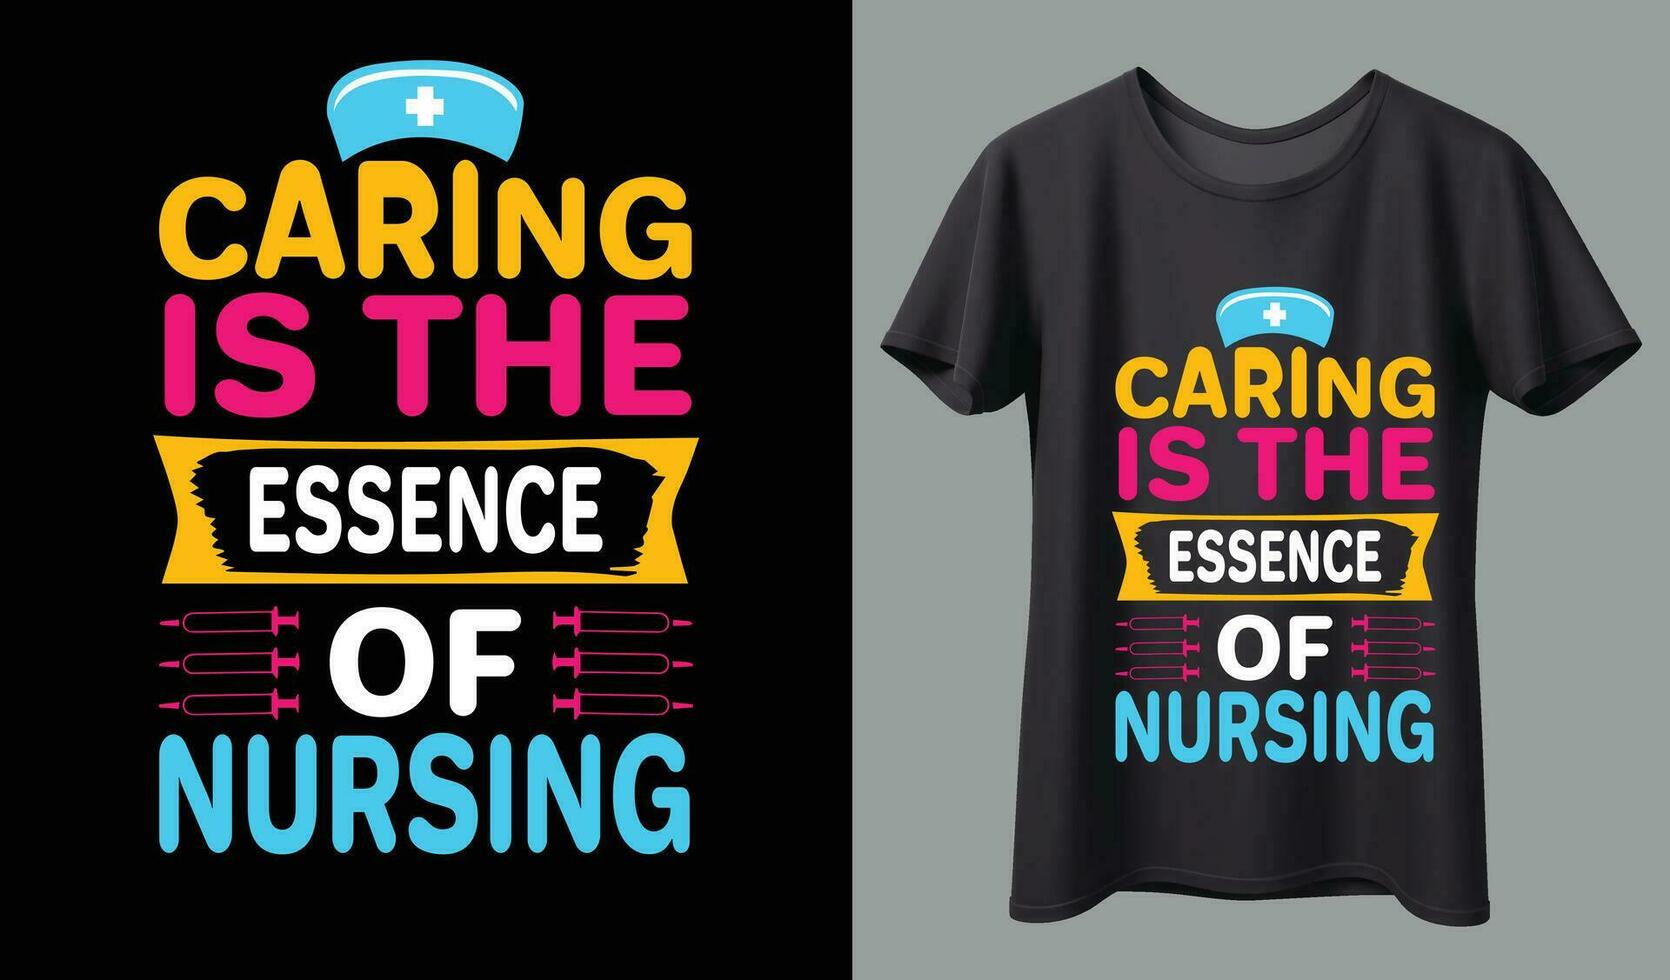 Proud retired nurse just like a regular nurse t-shirt and poster vector design template. Nursing t-shirt with medical element vectors. Stethoscope, syringe design. For label, badge, emblem.